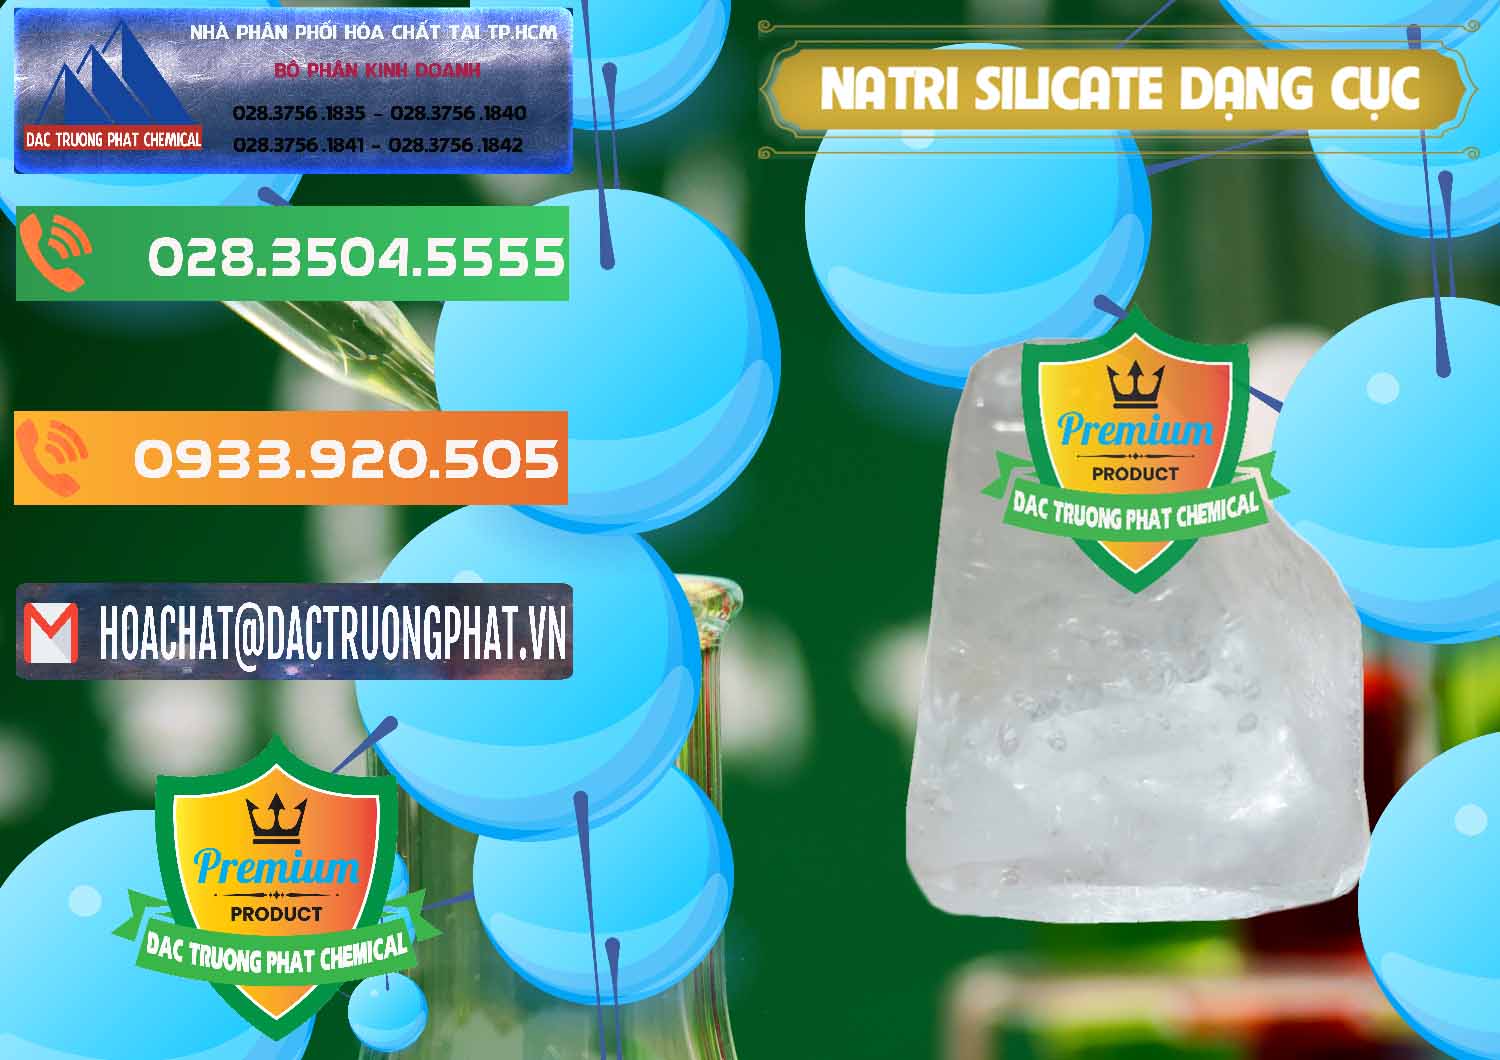 Nơi bán - cung ứng Natri Silicate - Na2SiO3 - Keo Silicate Dạng Cục Ấn Độ India - 0382 - Chuyên phân phối & cung cấp hóa chất tại TP.HCM - hoachatxulynuoc.com.vn